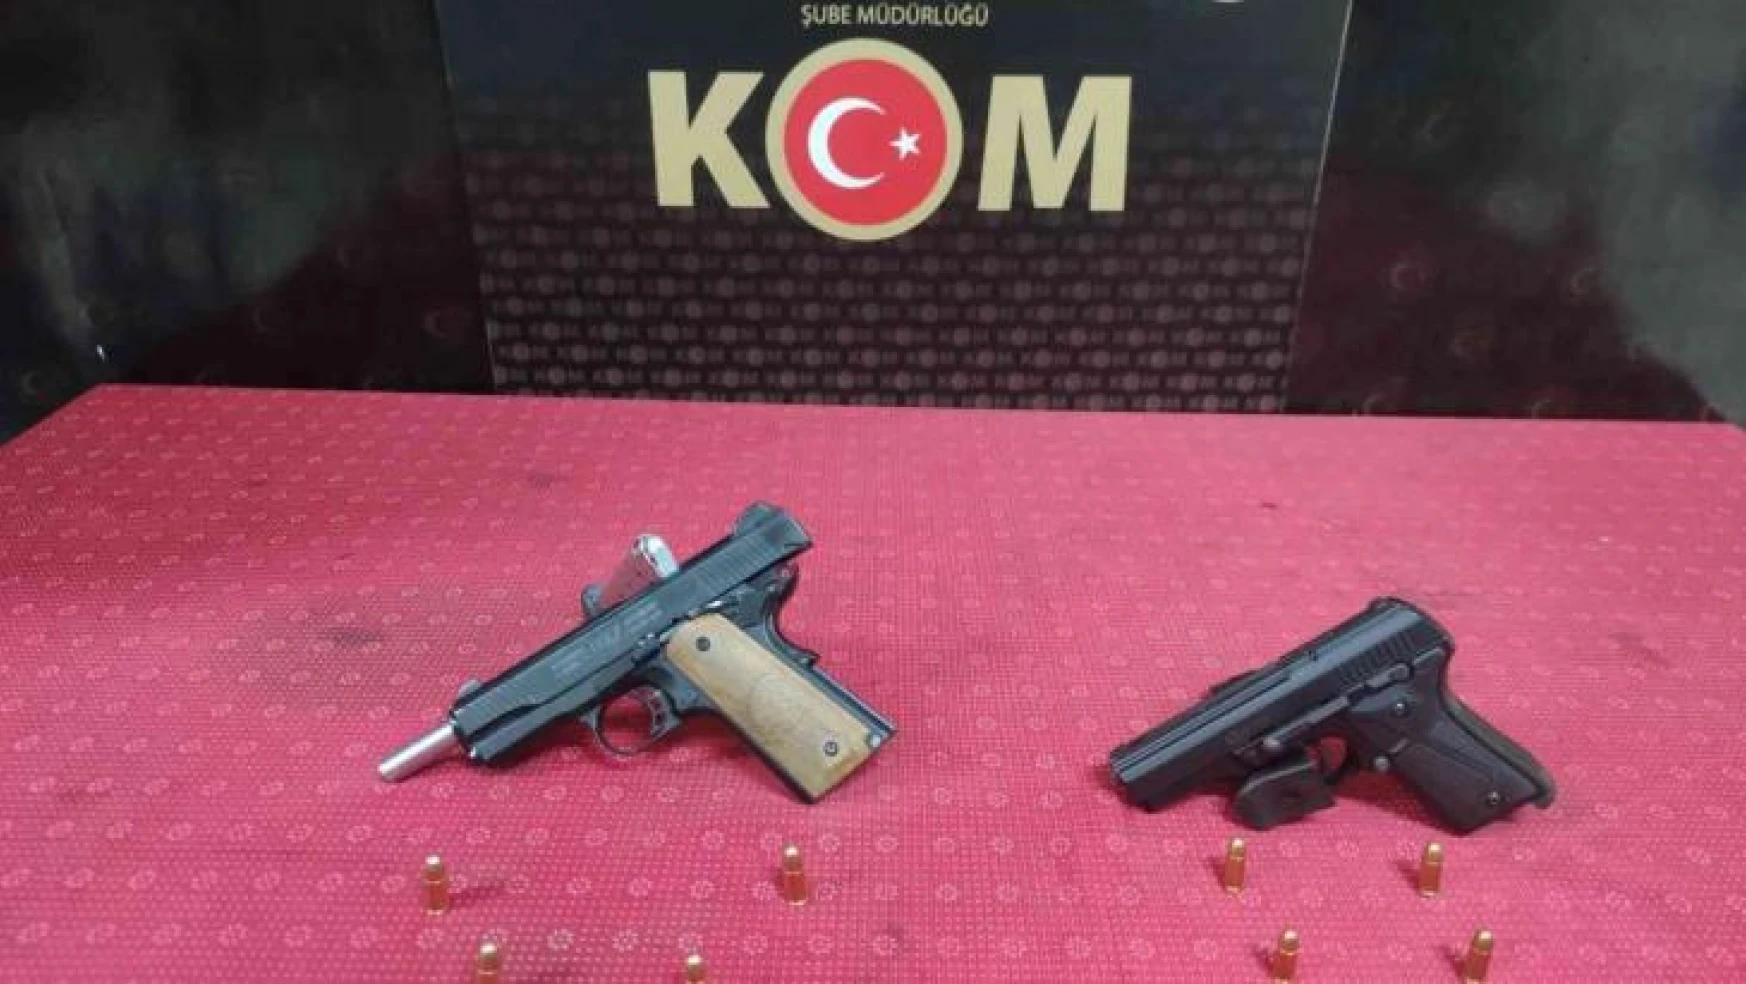 Gaziantep'te silah ticareti operasyonu: 3 gözaltı